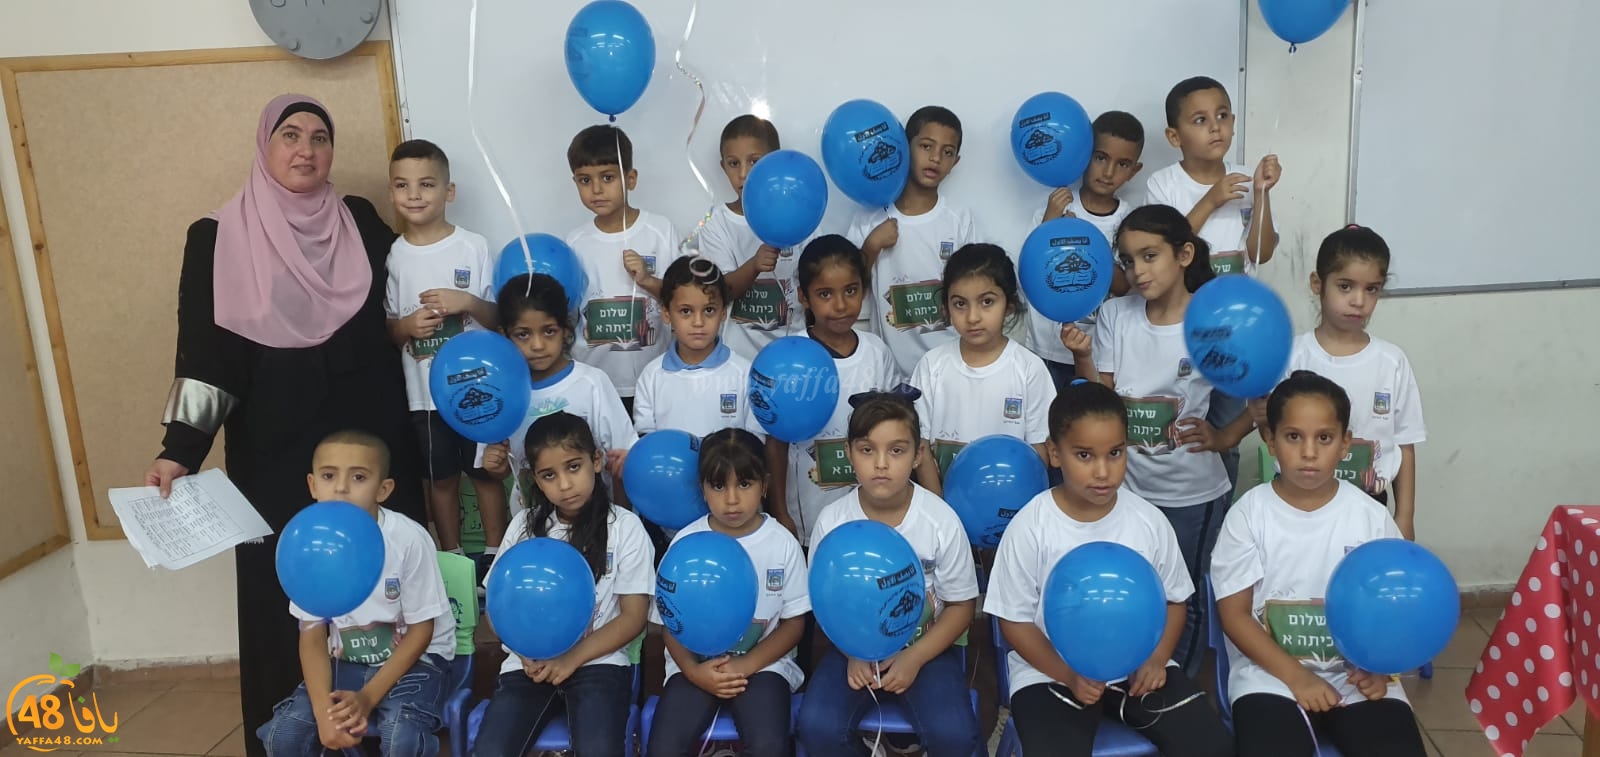 فيديو: مدرسة الراشدية في اللد تستقبل طلابها في العام الدراسي الجديد 